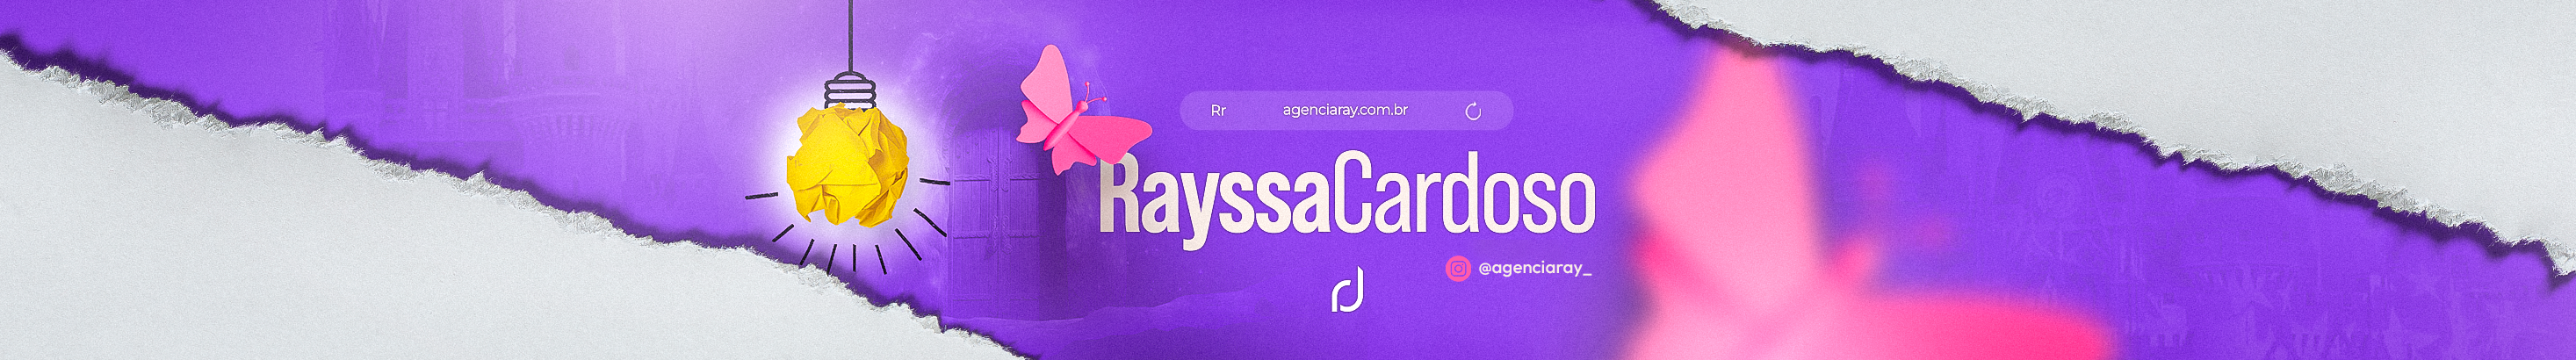 Rayssa Cardoso profil başlığı